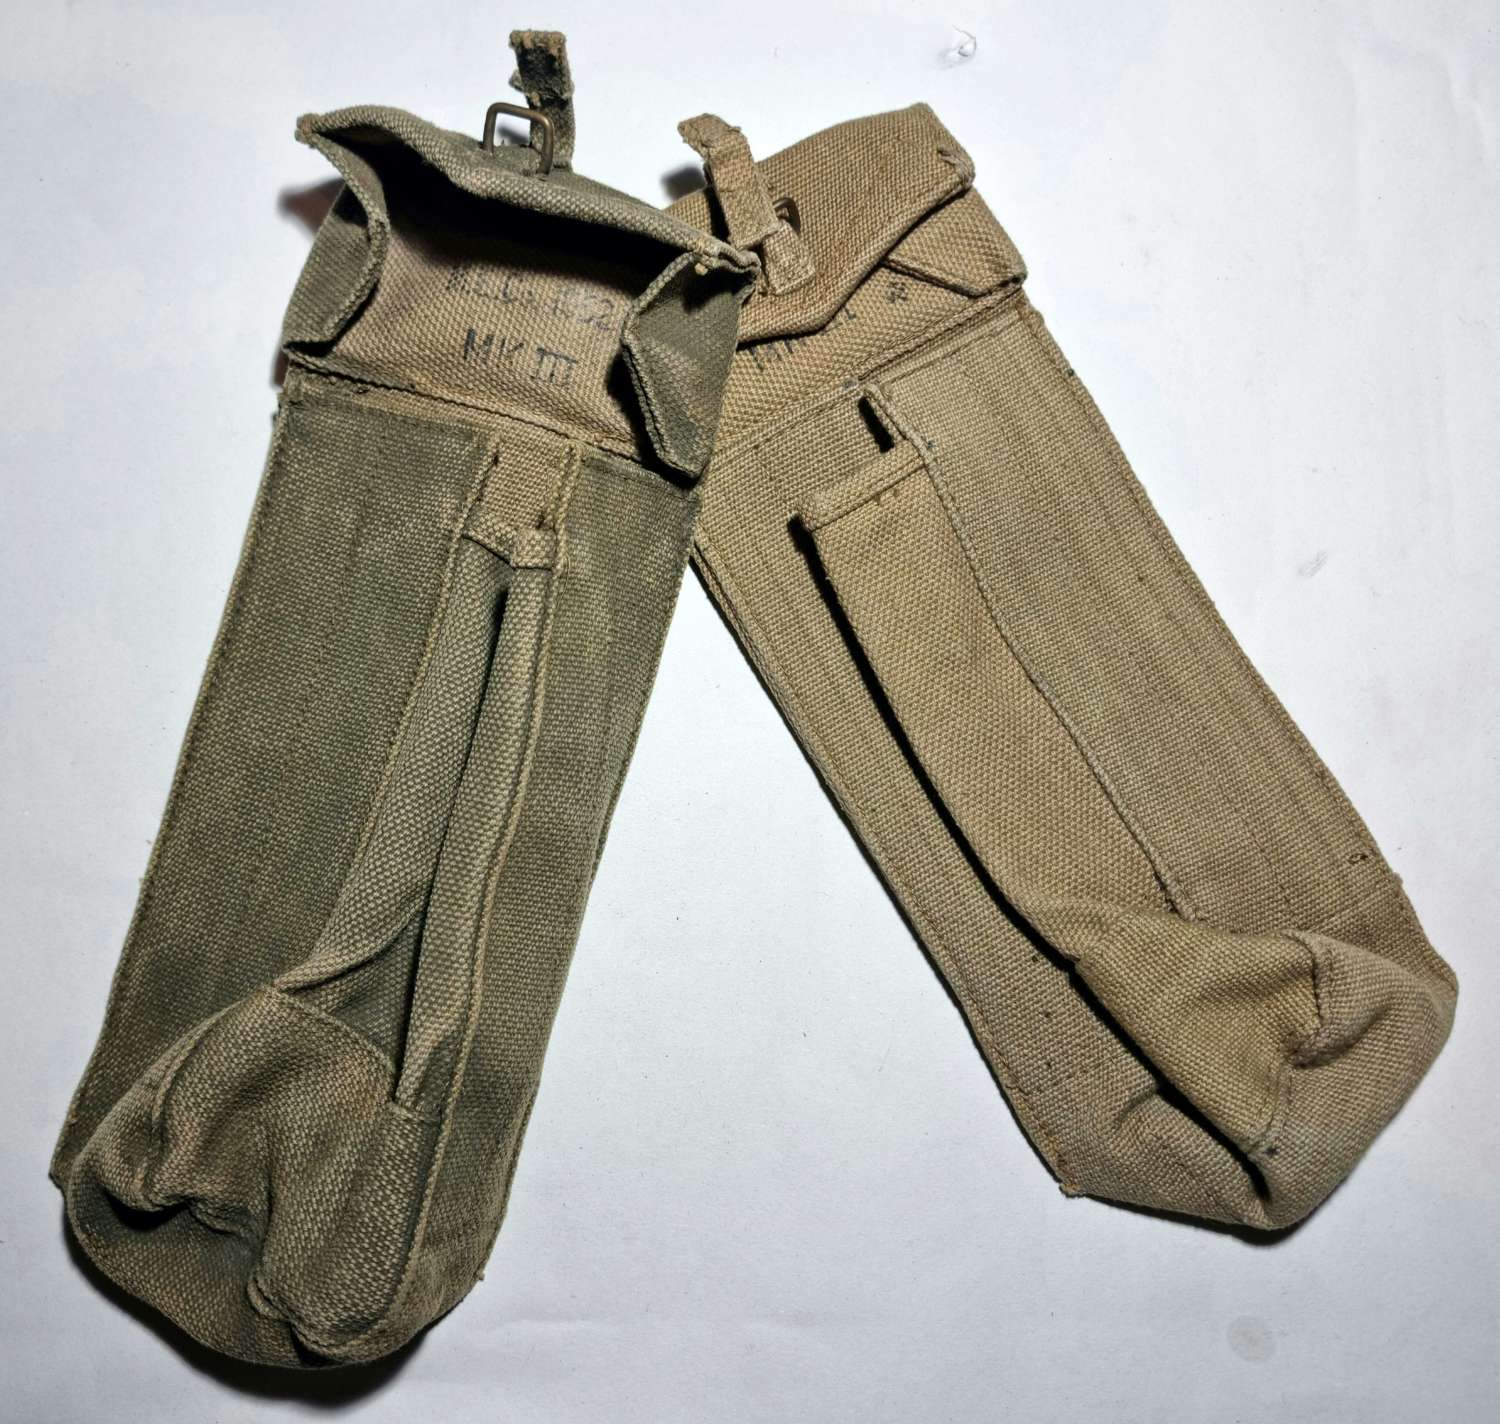 Post-War British MKIII 37 pattern pouches